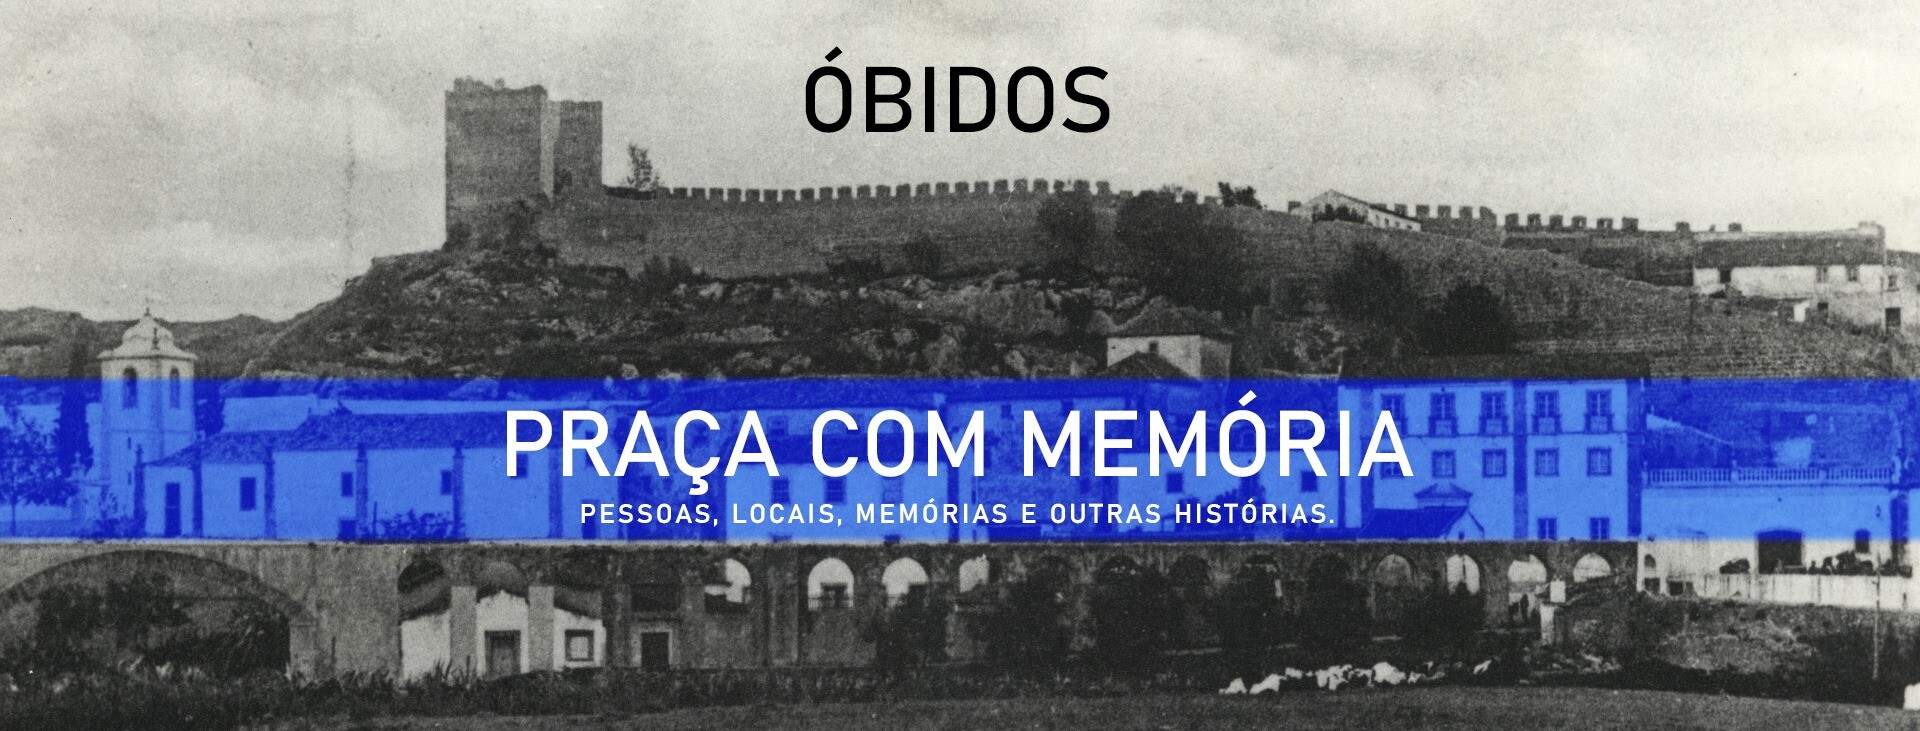 'Praça com Memória' fala sobre a História, as Pessoas e as Memórias de Óbidos